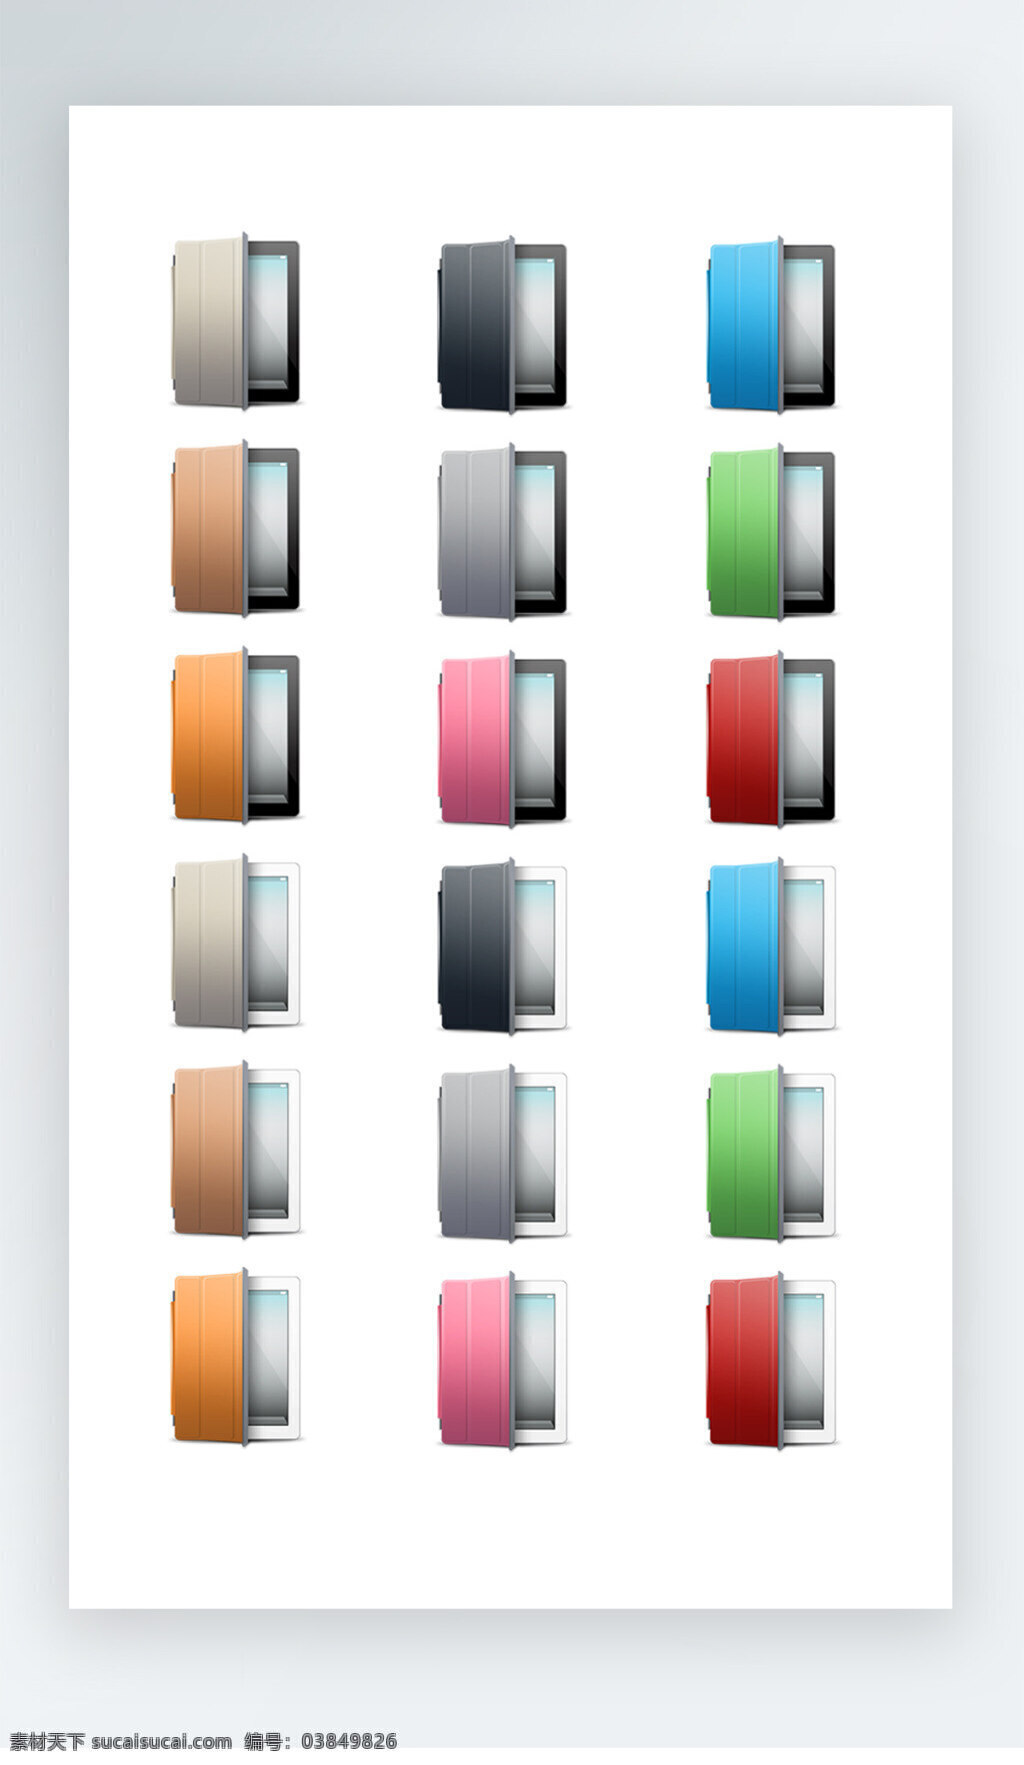 冰箱 图标 彩色 工具 iconpng 冰箱图标 彩色工具图标 icon